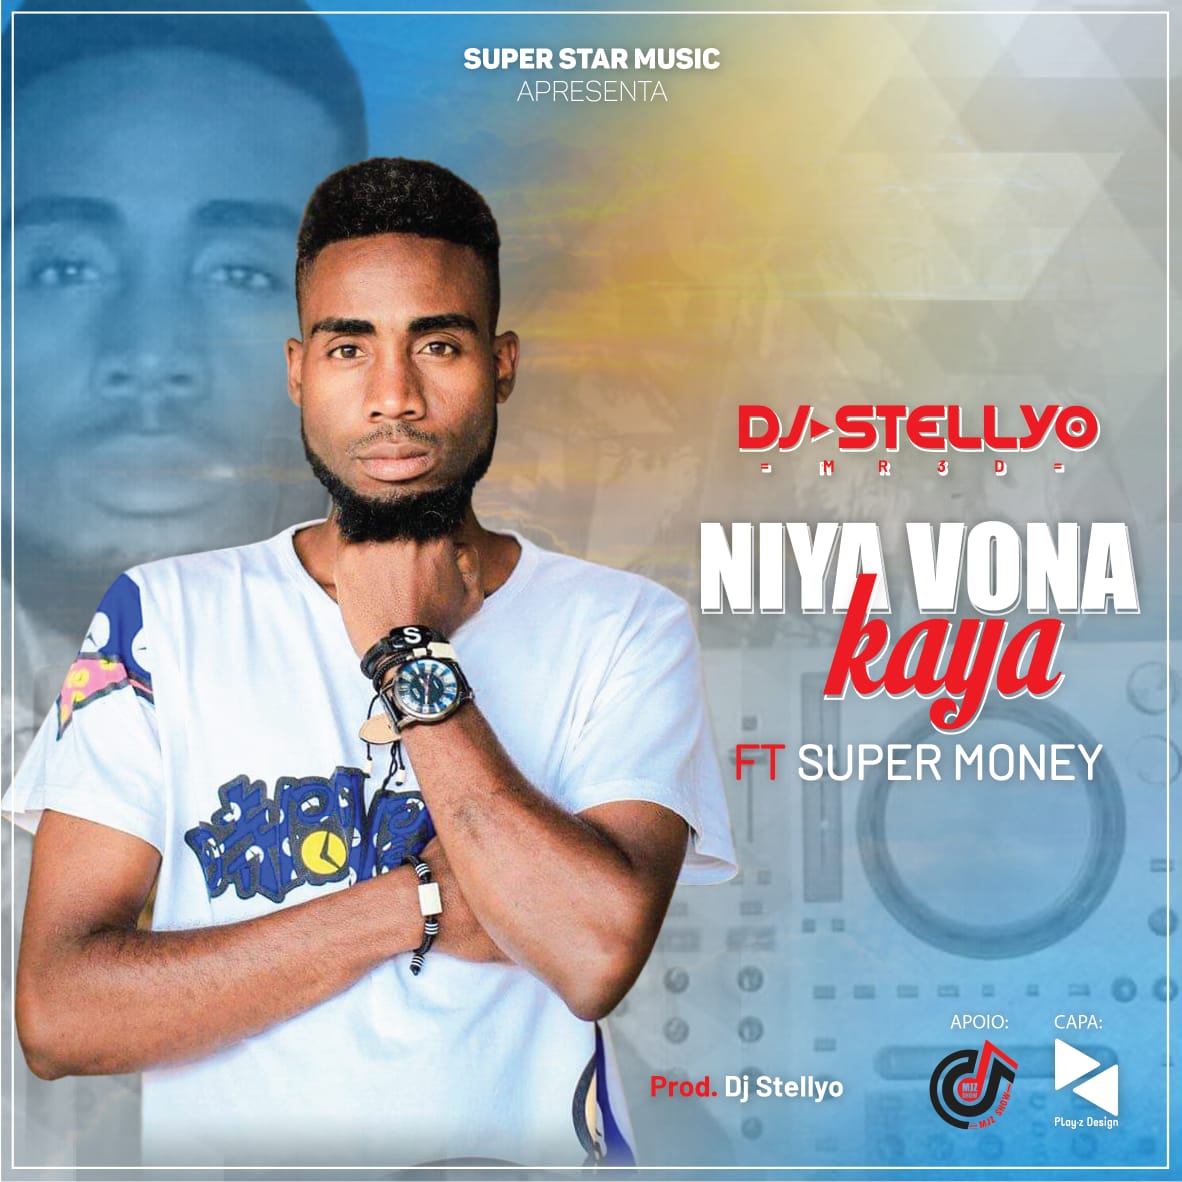 Dj Stellyo e Super Money – Niya Vona Kaya